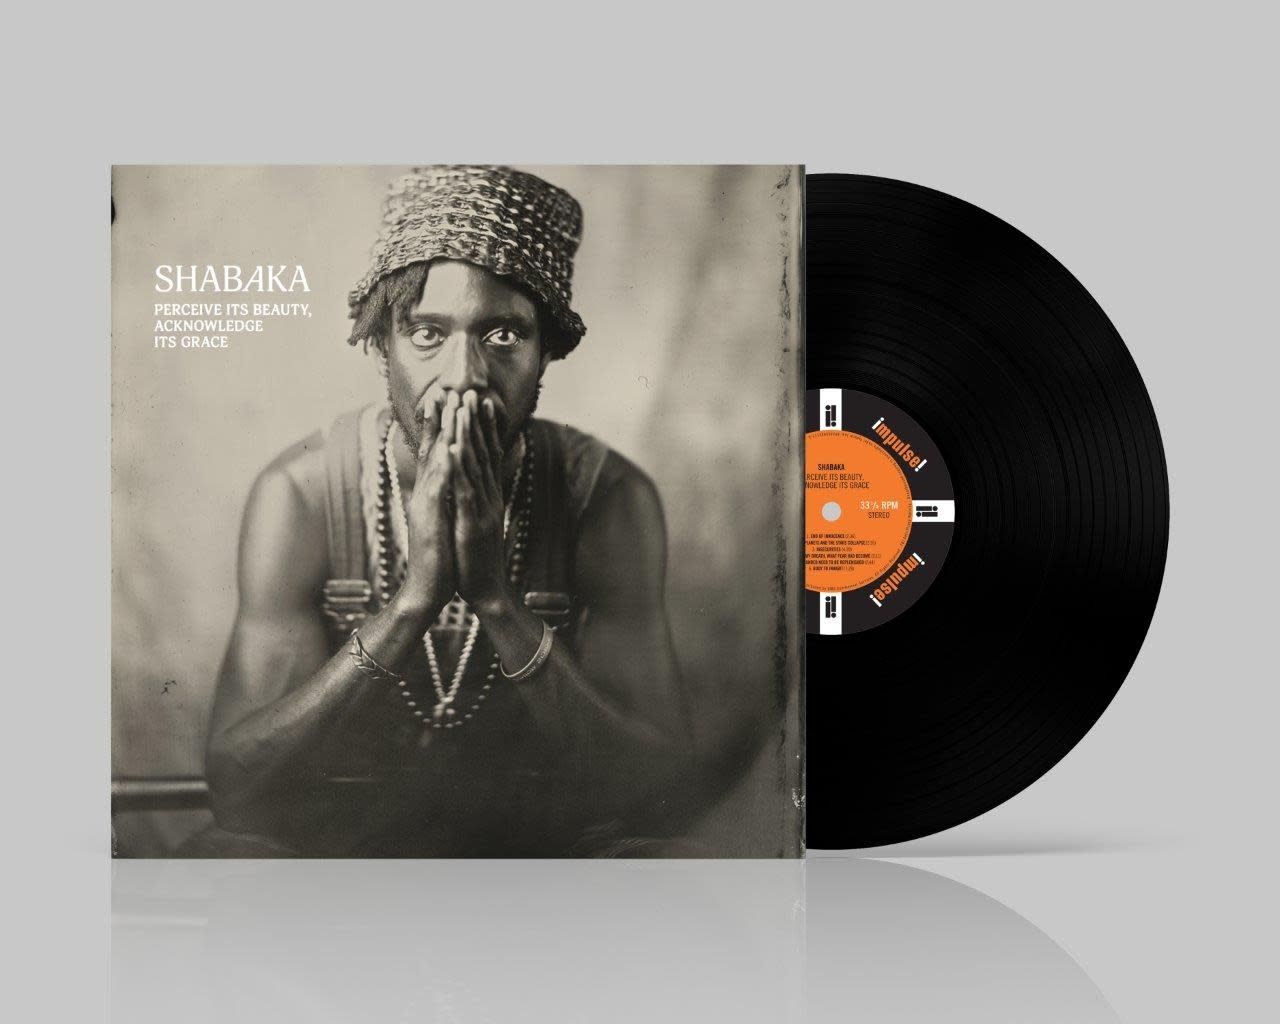 Decca Shabaka - Perceive its beauty, Acknowledge its Grace